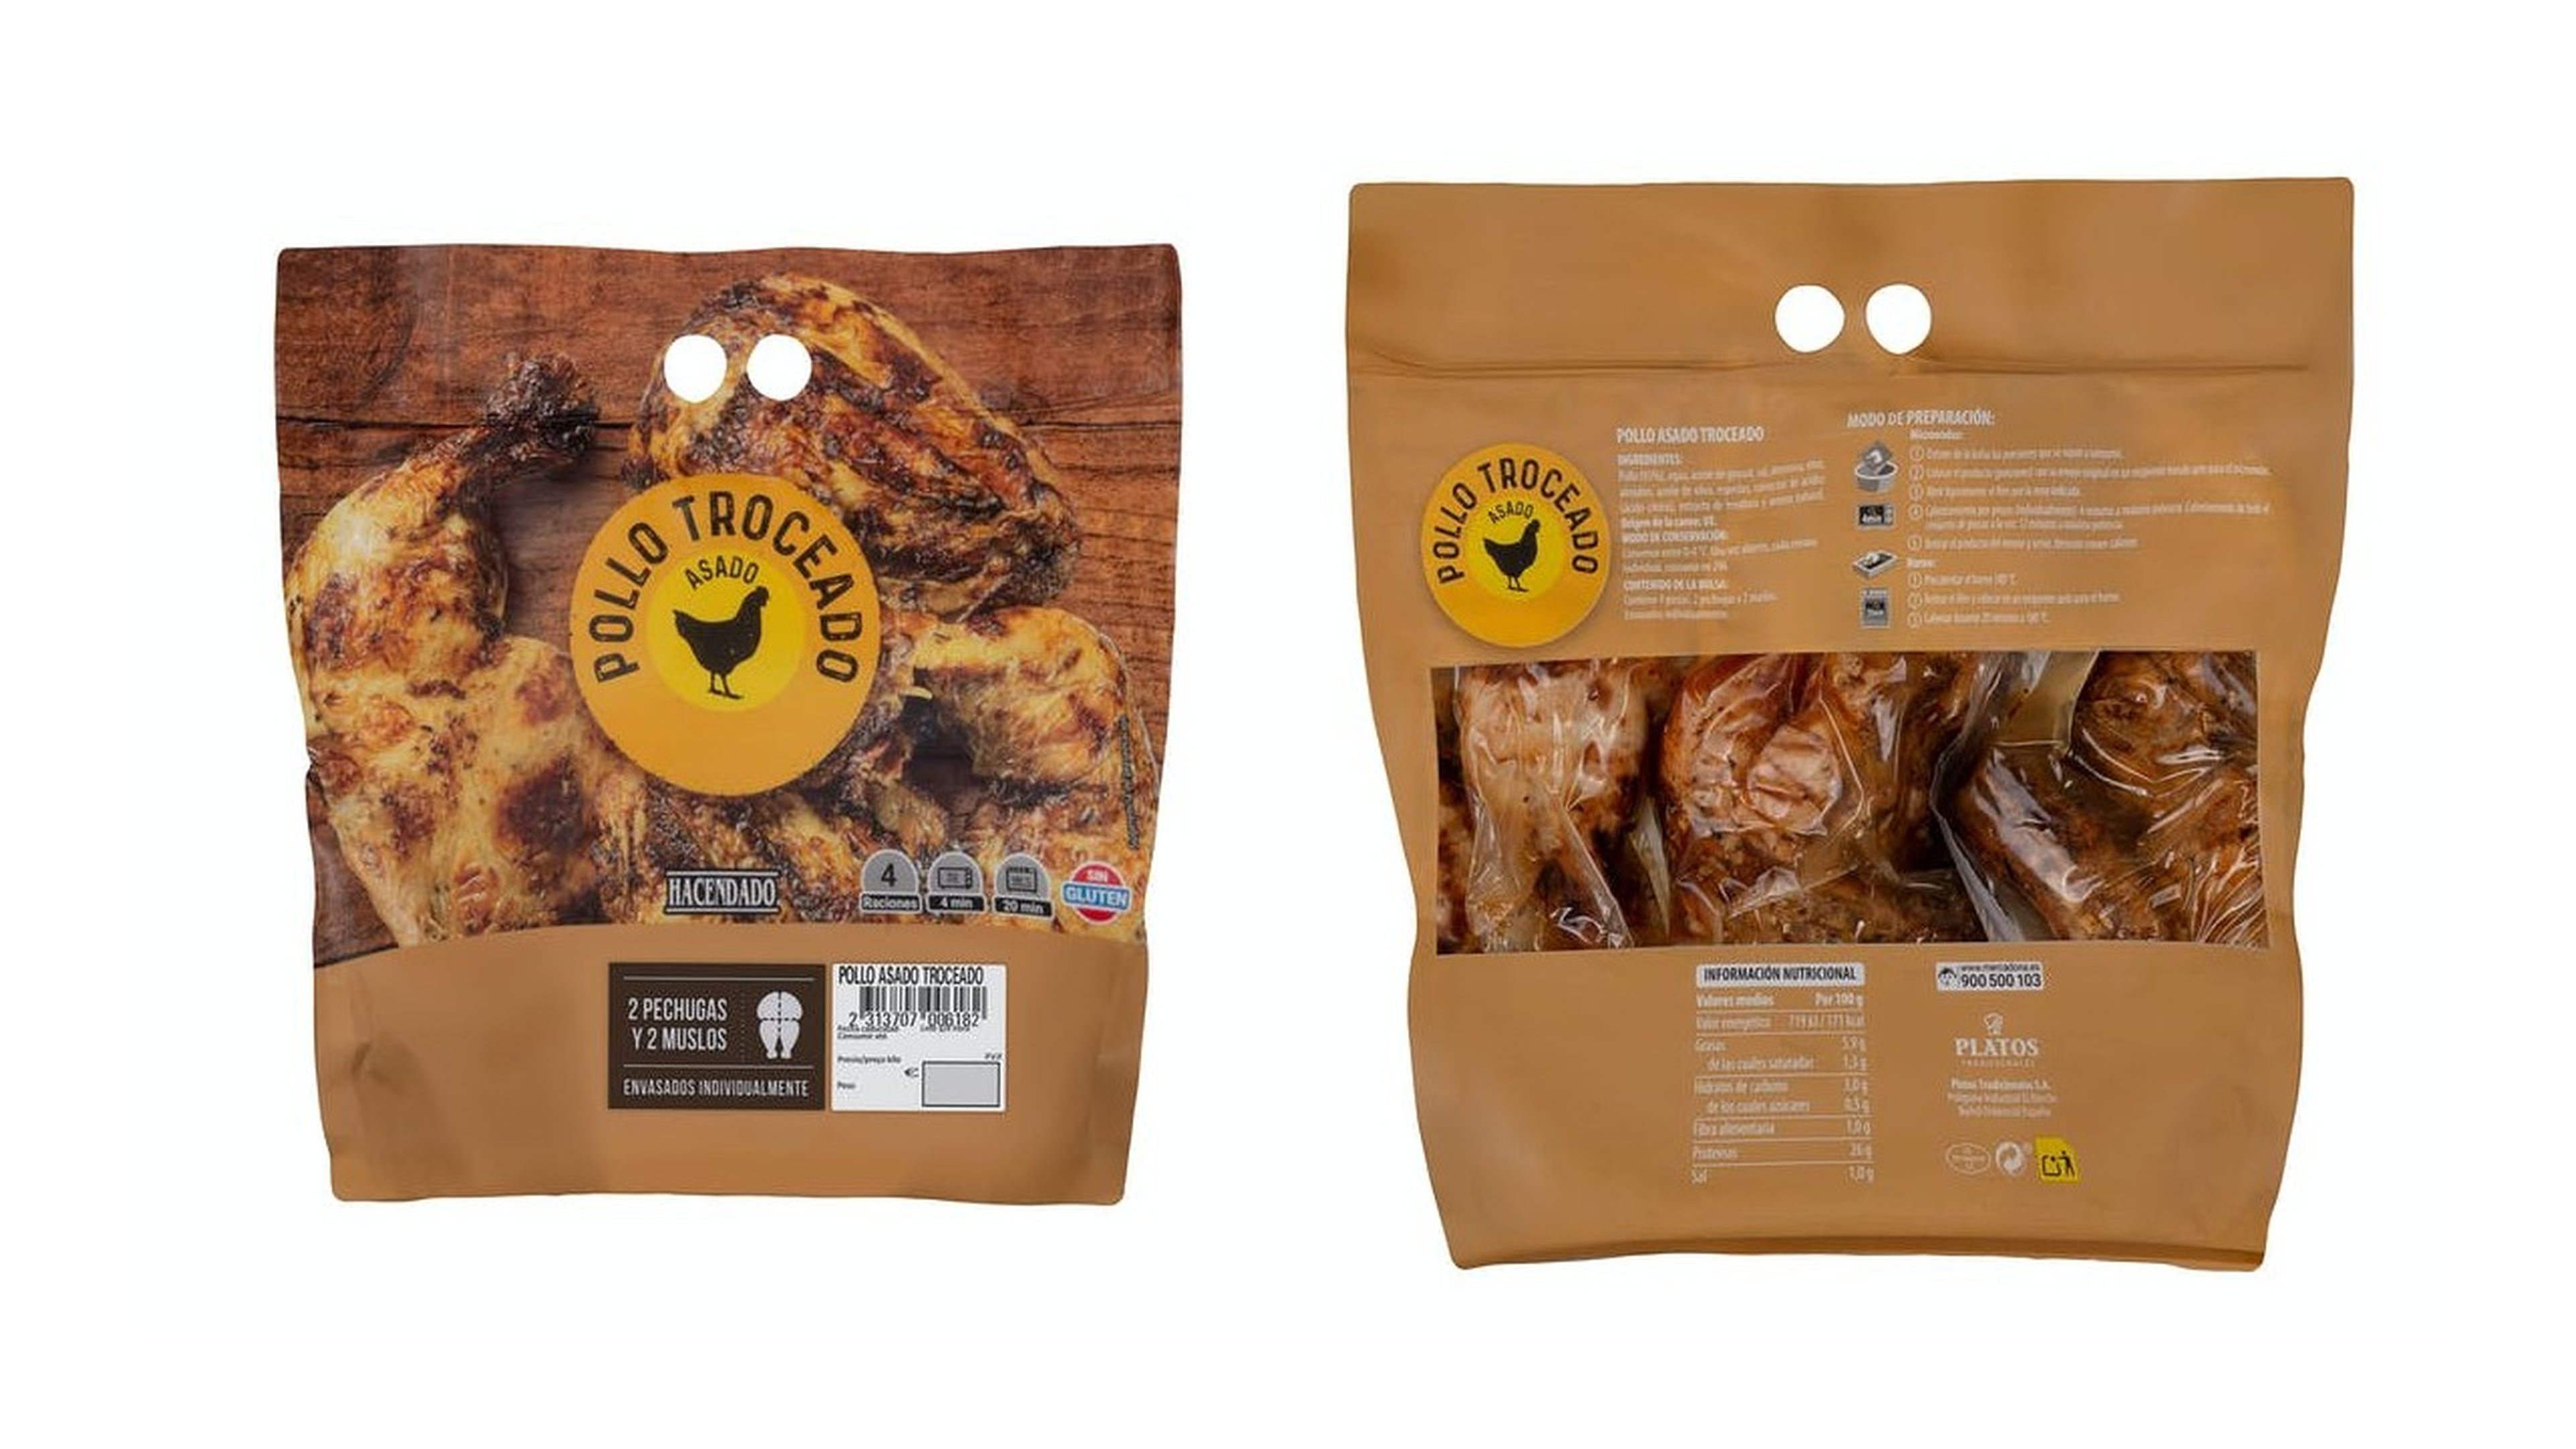 Pollo asado troceado, la genialidad de Mercadona que sorprende y gusta |  Business Insider España